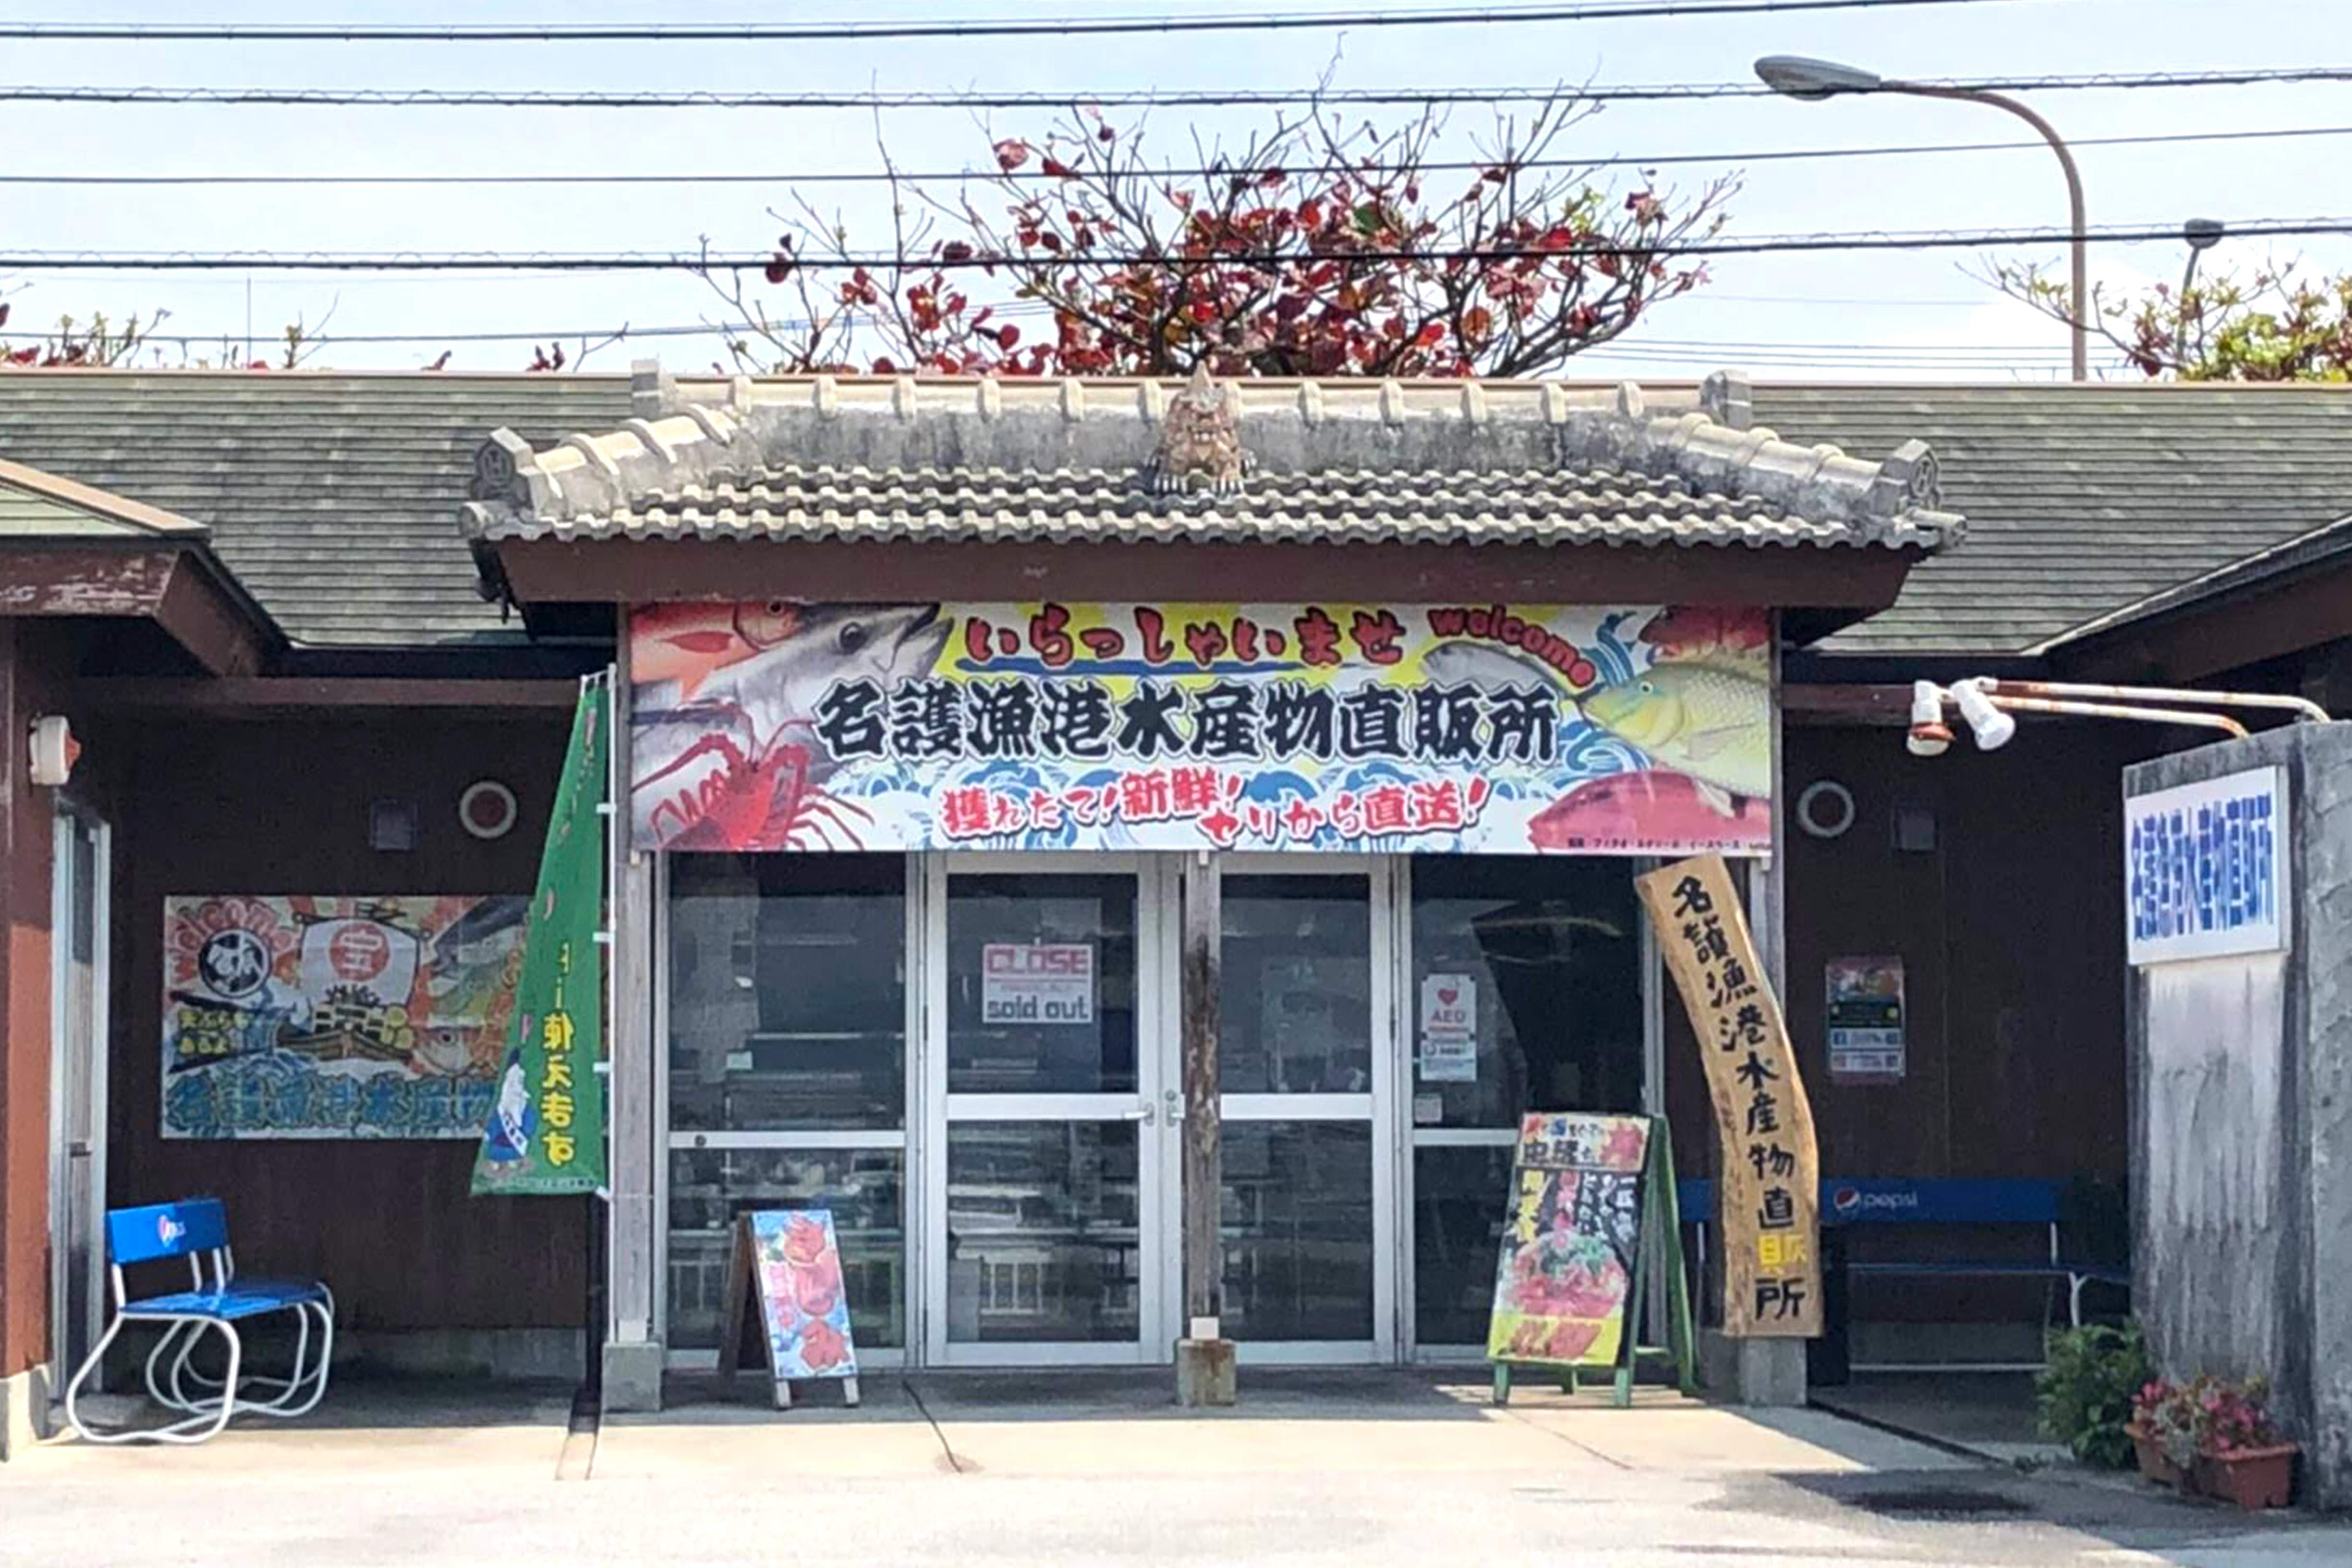 沖縄本島北部の名護漁港にある 沖縄の定番魚料理と海鮮が食べられる素朴な大衆食堂 沖縄の観光情報はfeel Okinawa